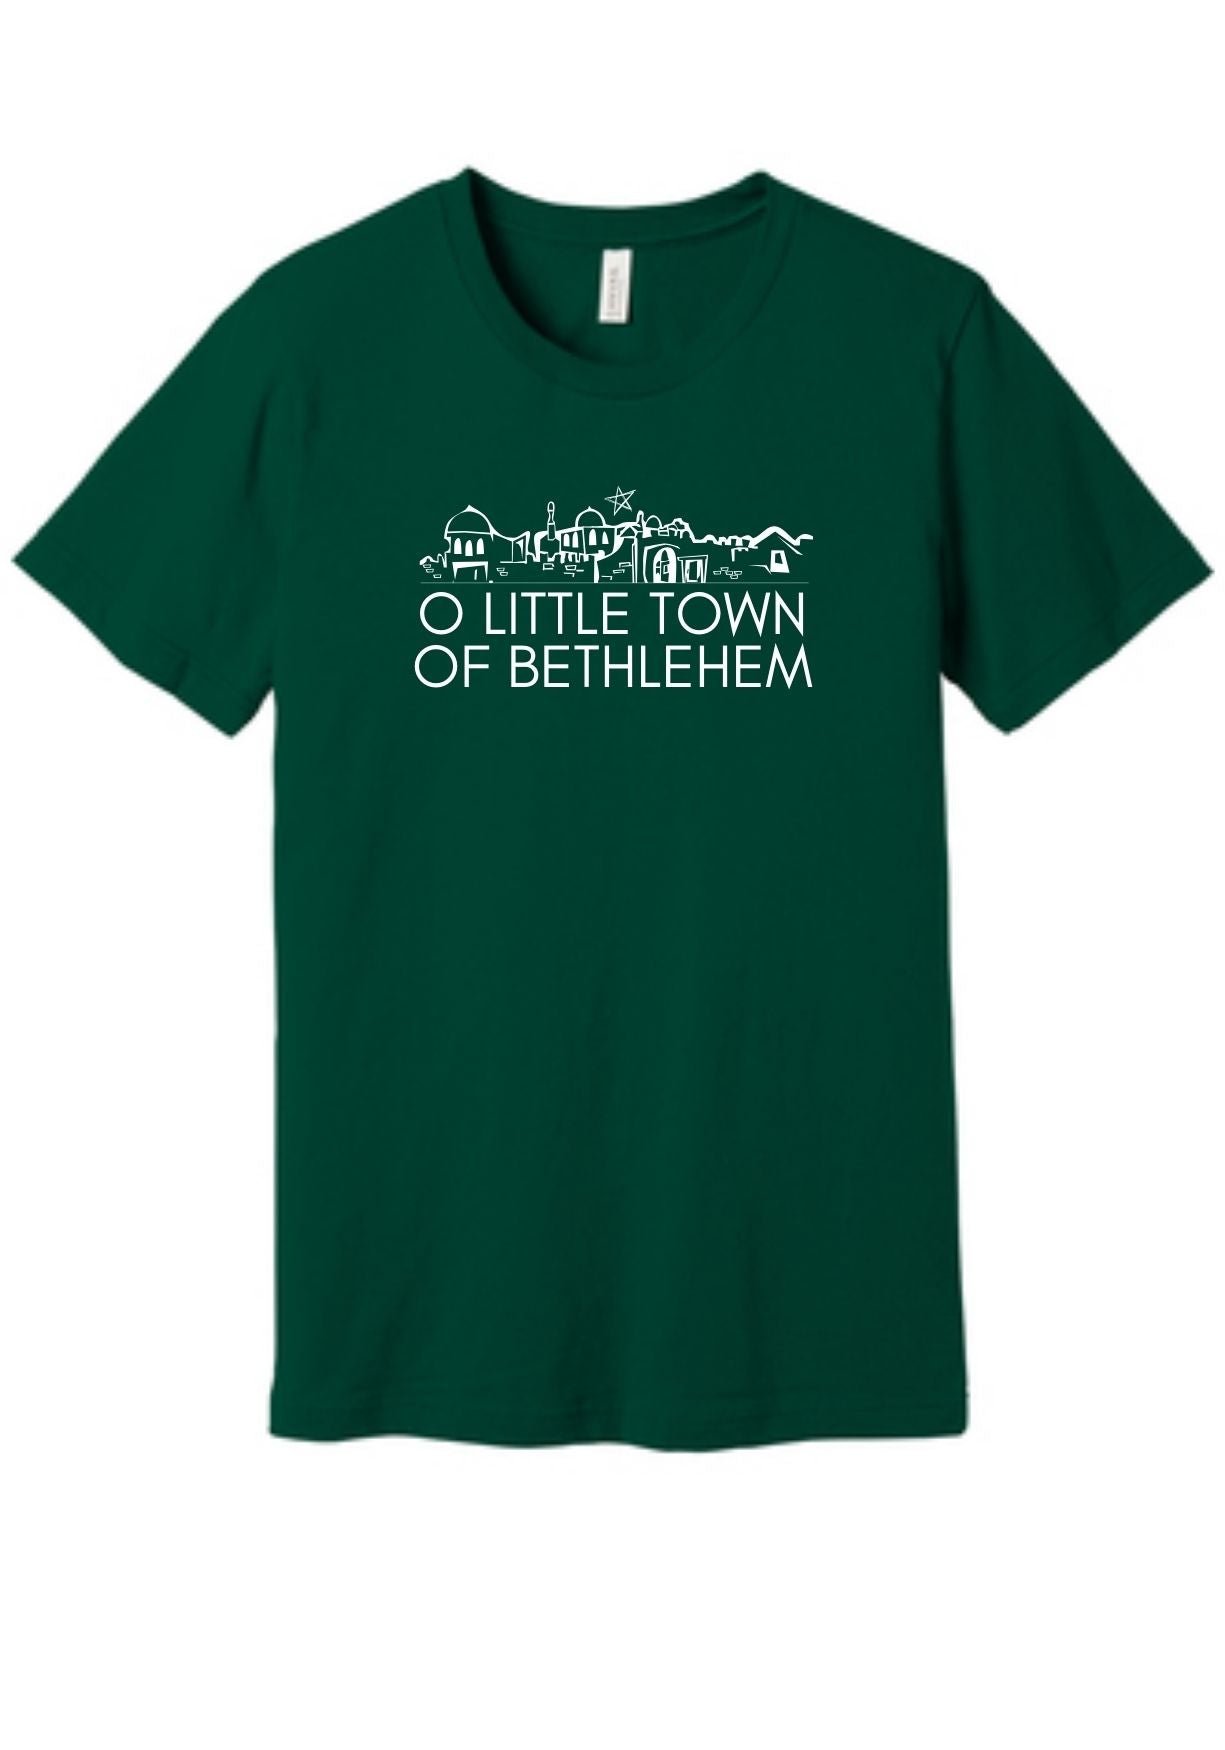 Christian Christmas T-shirt "O Little Town of Bethlehem"